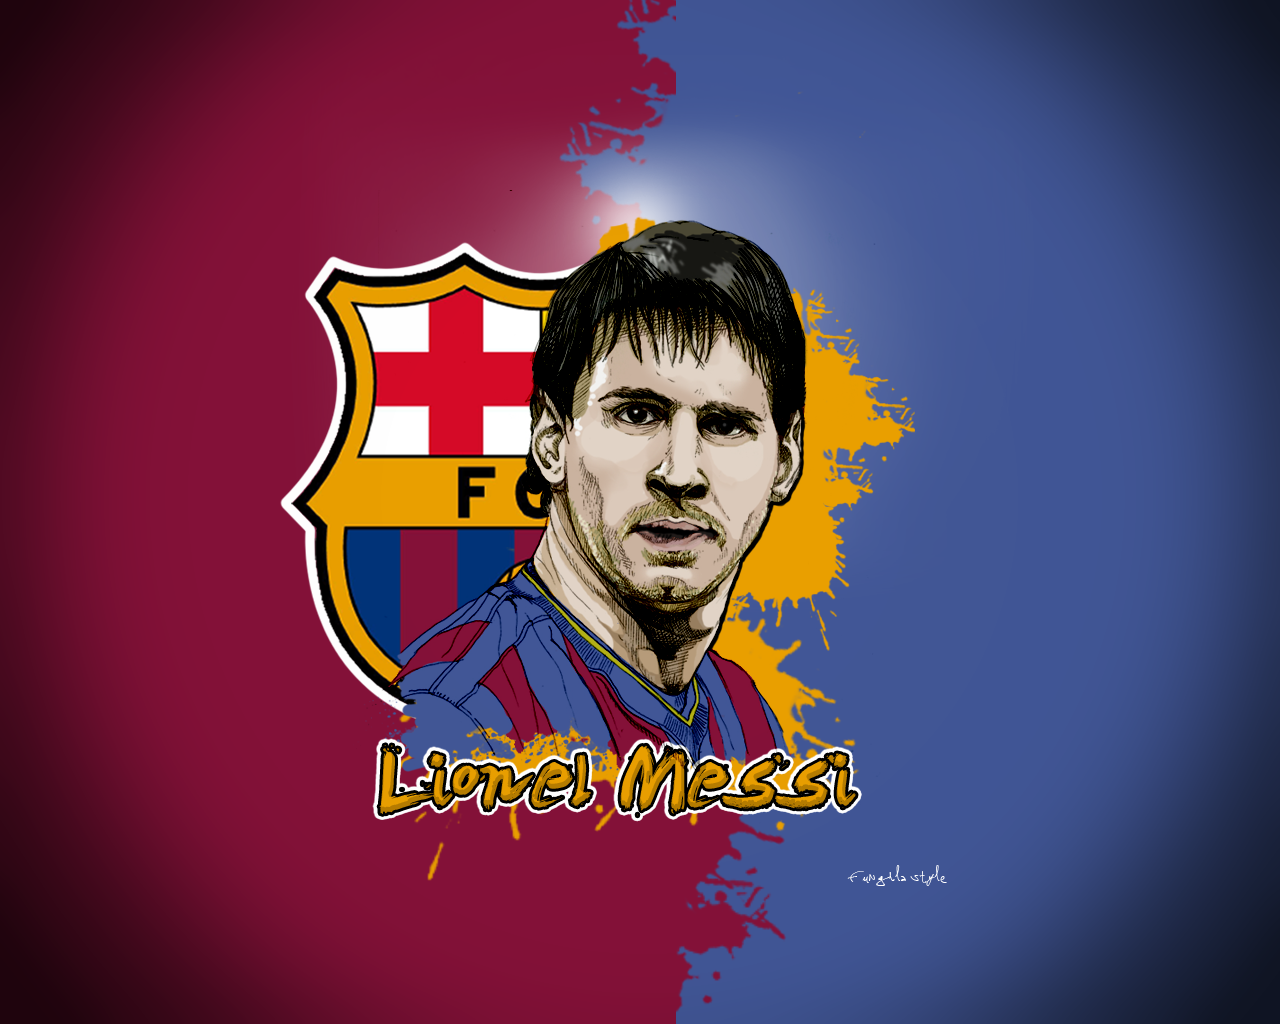 Description: Wallpaper Lionel Messi is Wallapers for pc desktop,laptop 